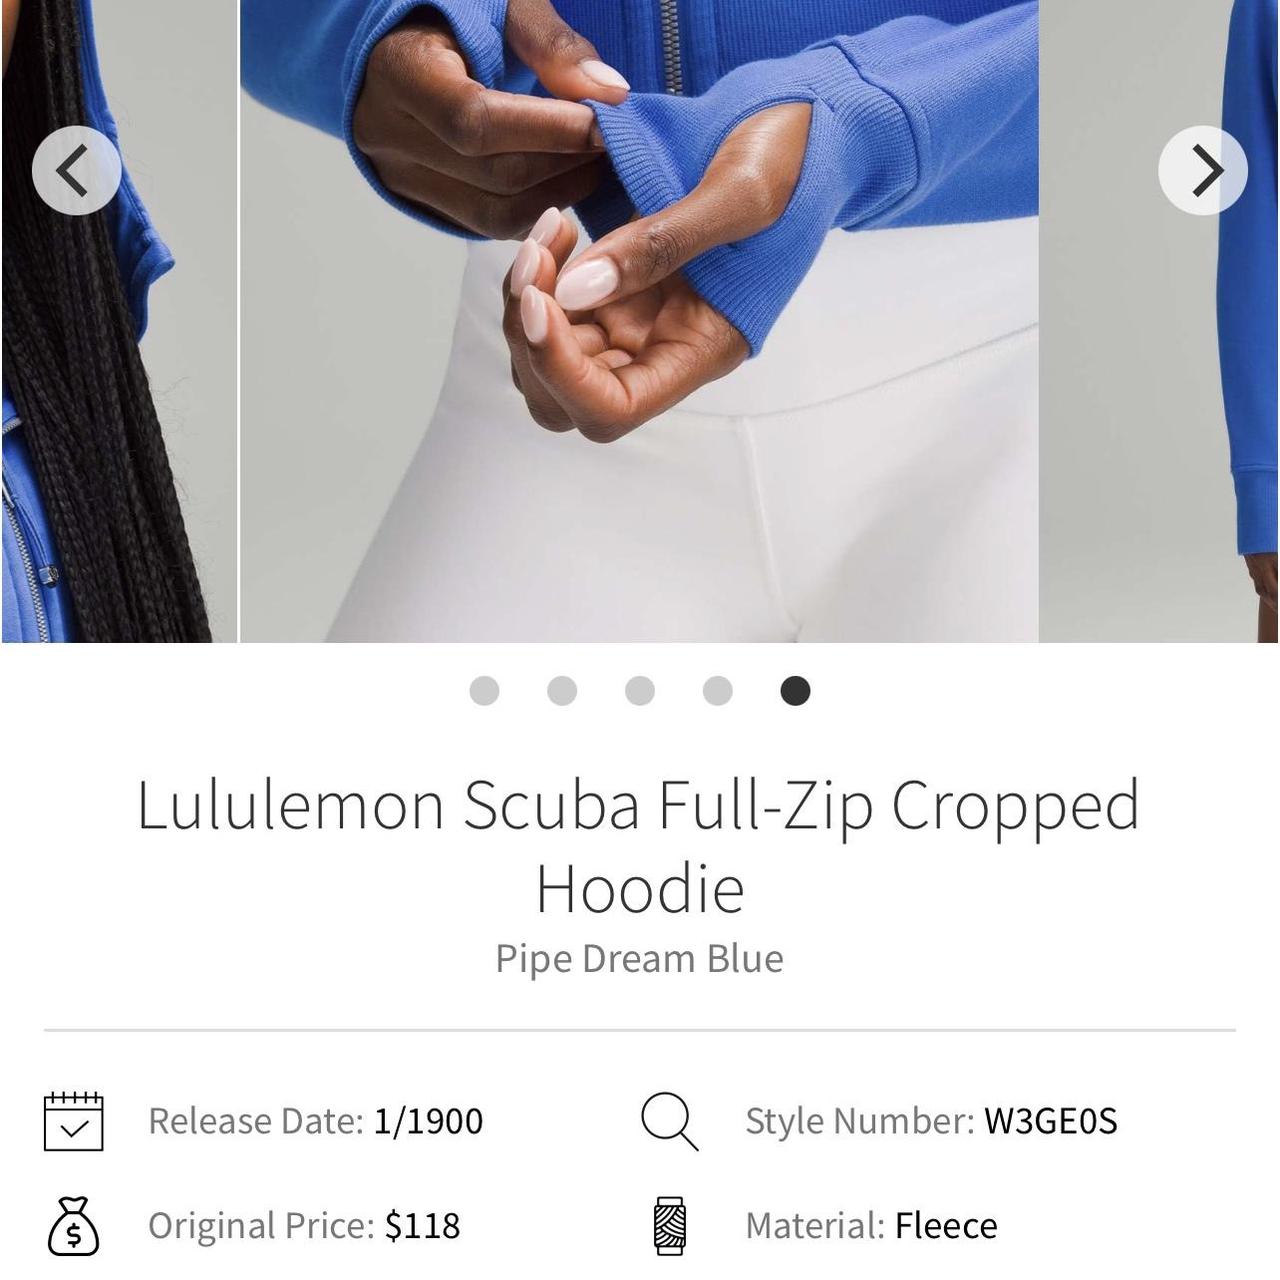 Lululemon Scuba Full Zip Cropped Hoodie size 4 - Depop